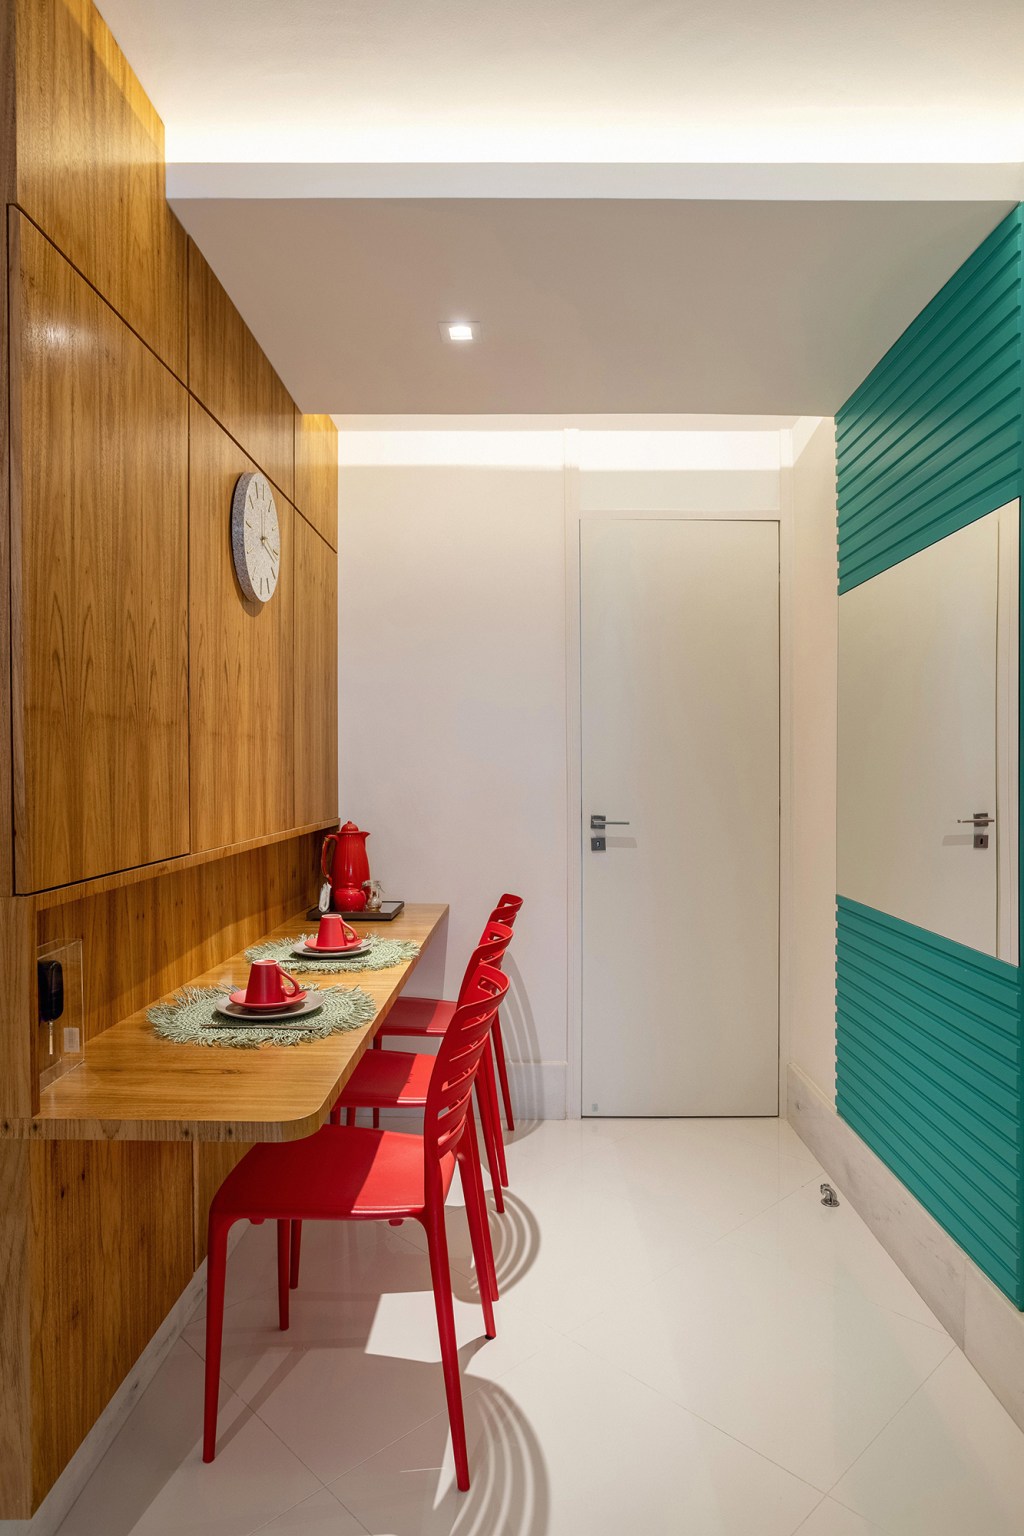 Cores vivas marcam décor deste apartamento de 300 m² com pé-direito duplo. Projeto de Ana Cano. Na foto, copa com cadeira vermelha e parede verde.